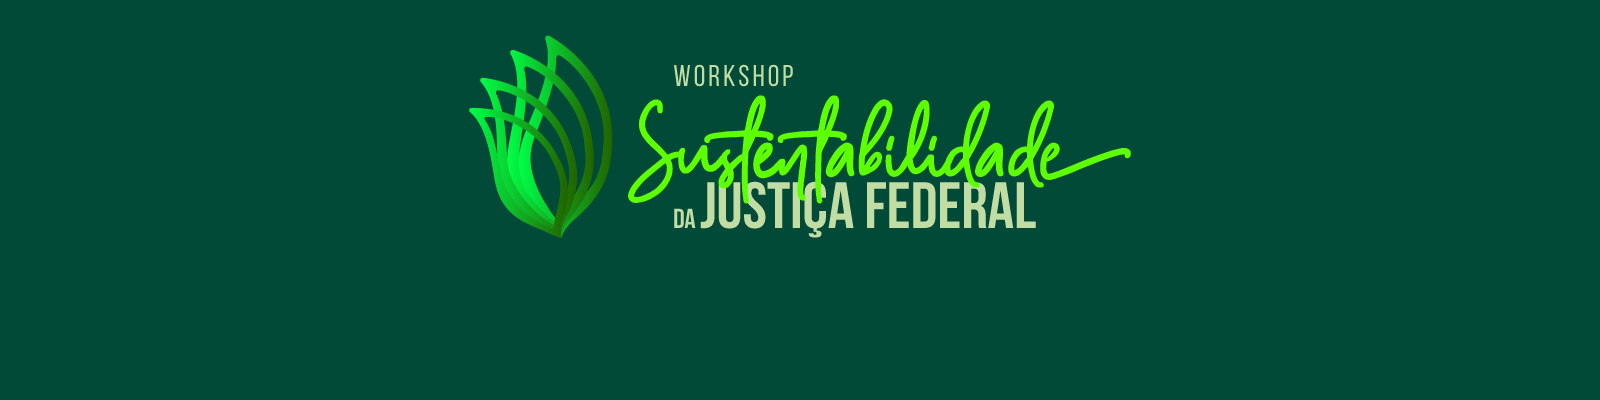 INSTITUCIONAL: Inscrições abertas para workshop on-line de sustentabilidade na Justiça Federal